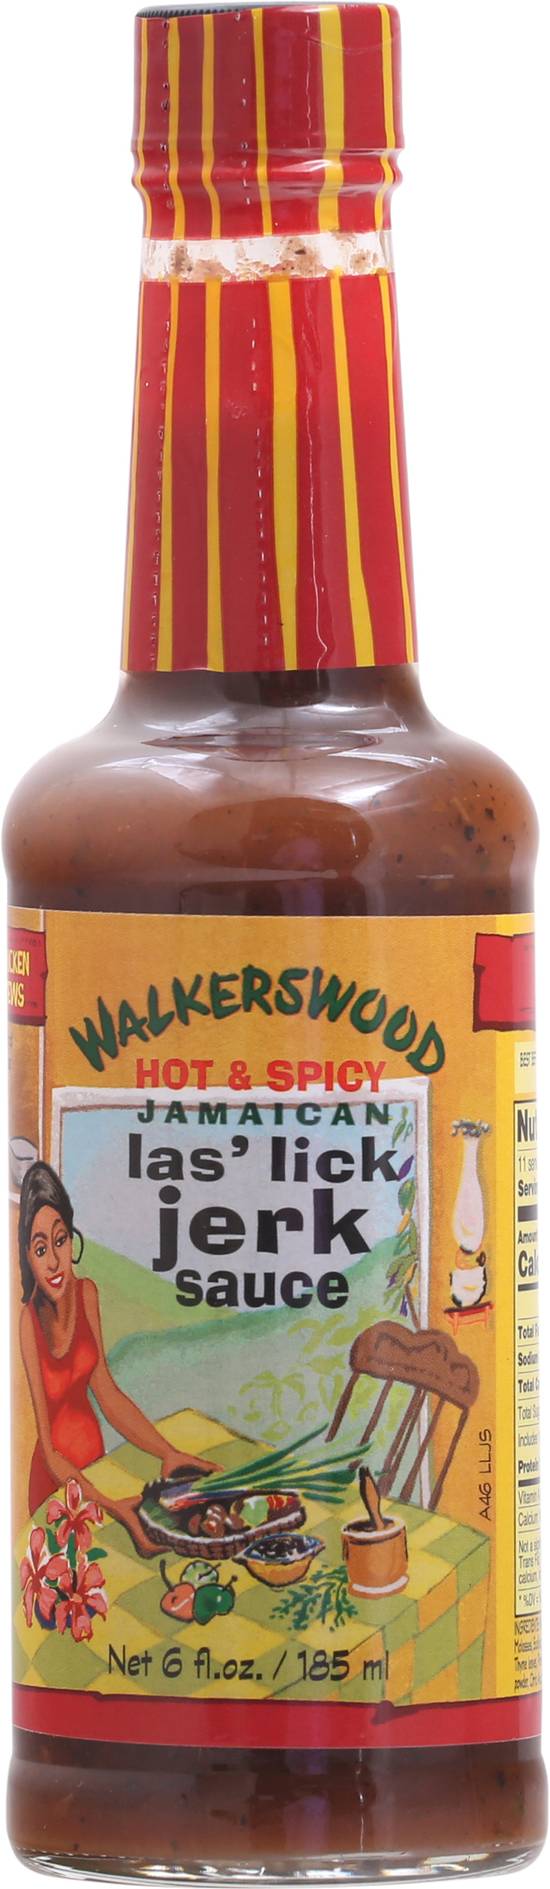 Walkerswood Hot & Spicy Jamaican Las' Lick Jerk Sauce (6 oz)